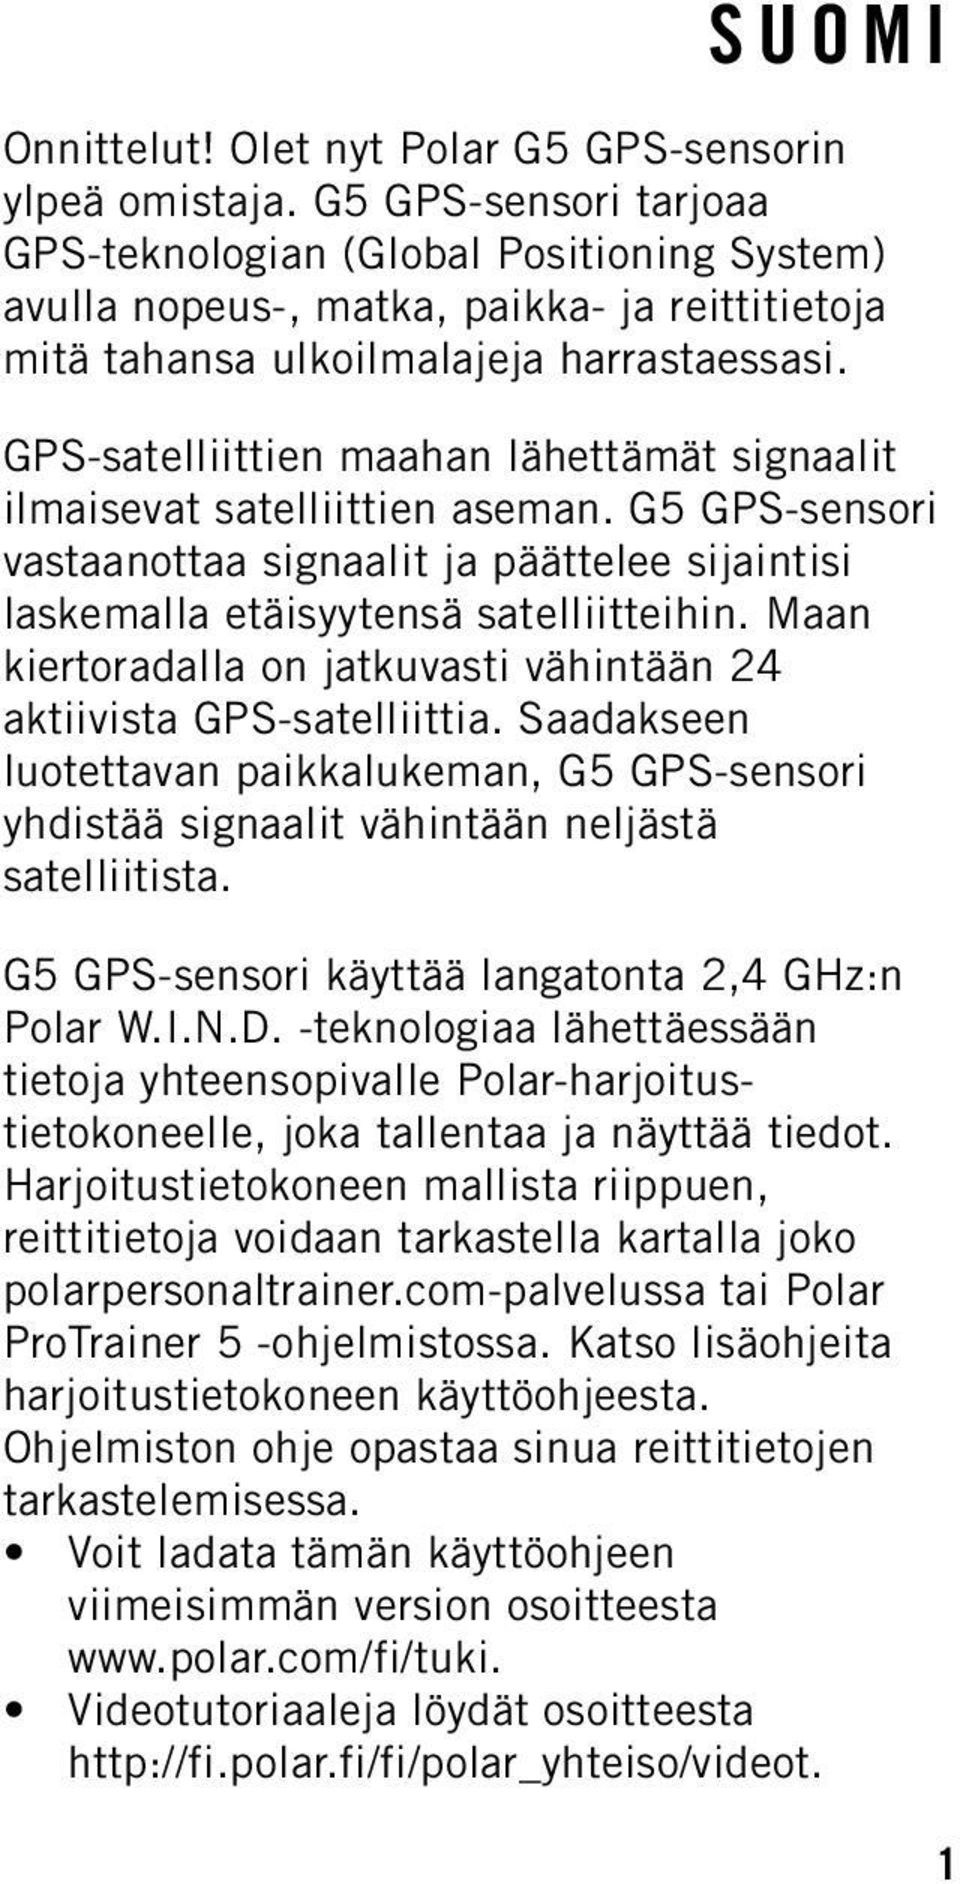 GPS-satelliittien maahan lähettämät signaalit ilmaisevat satelliittien aseman. G5 GPS-sensori vastaanottaa signaalit ja päättelee sijaintisi laskemalla etäisyytensä satelliitteihin.